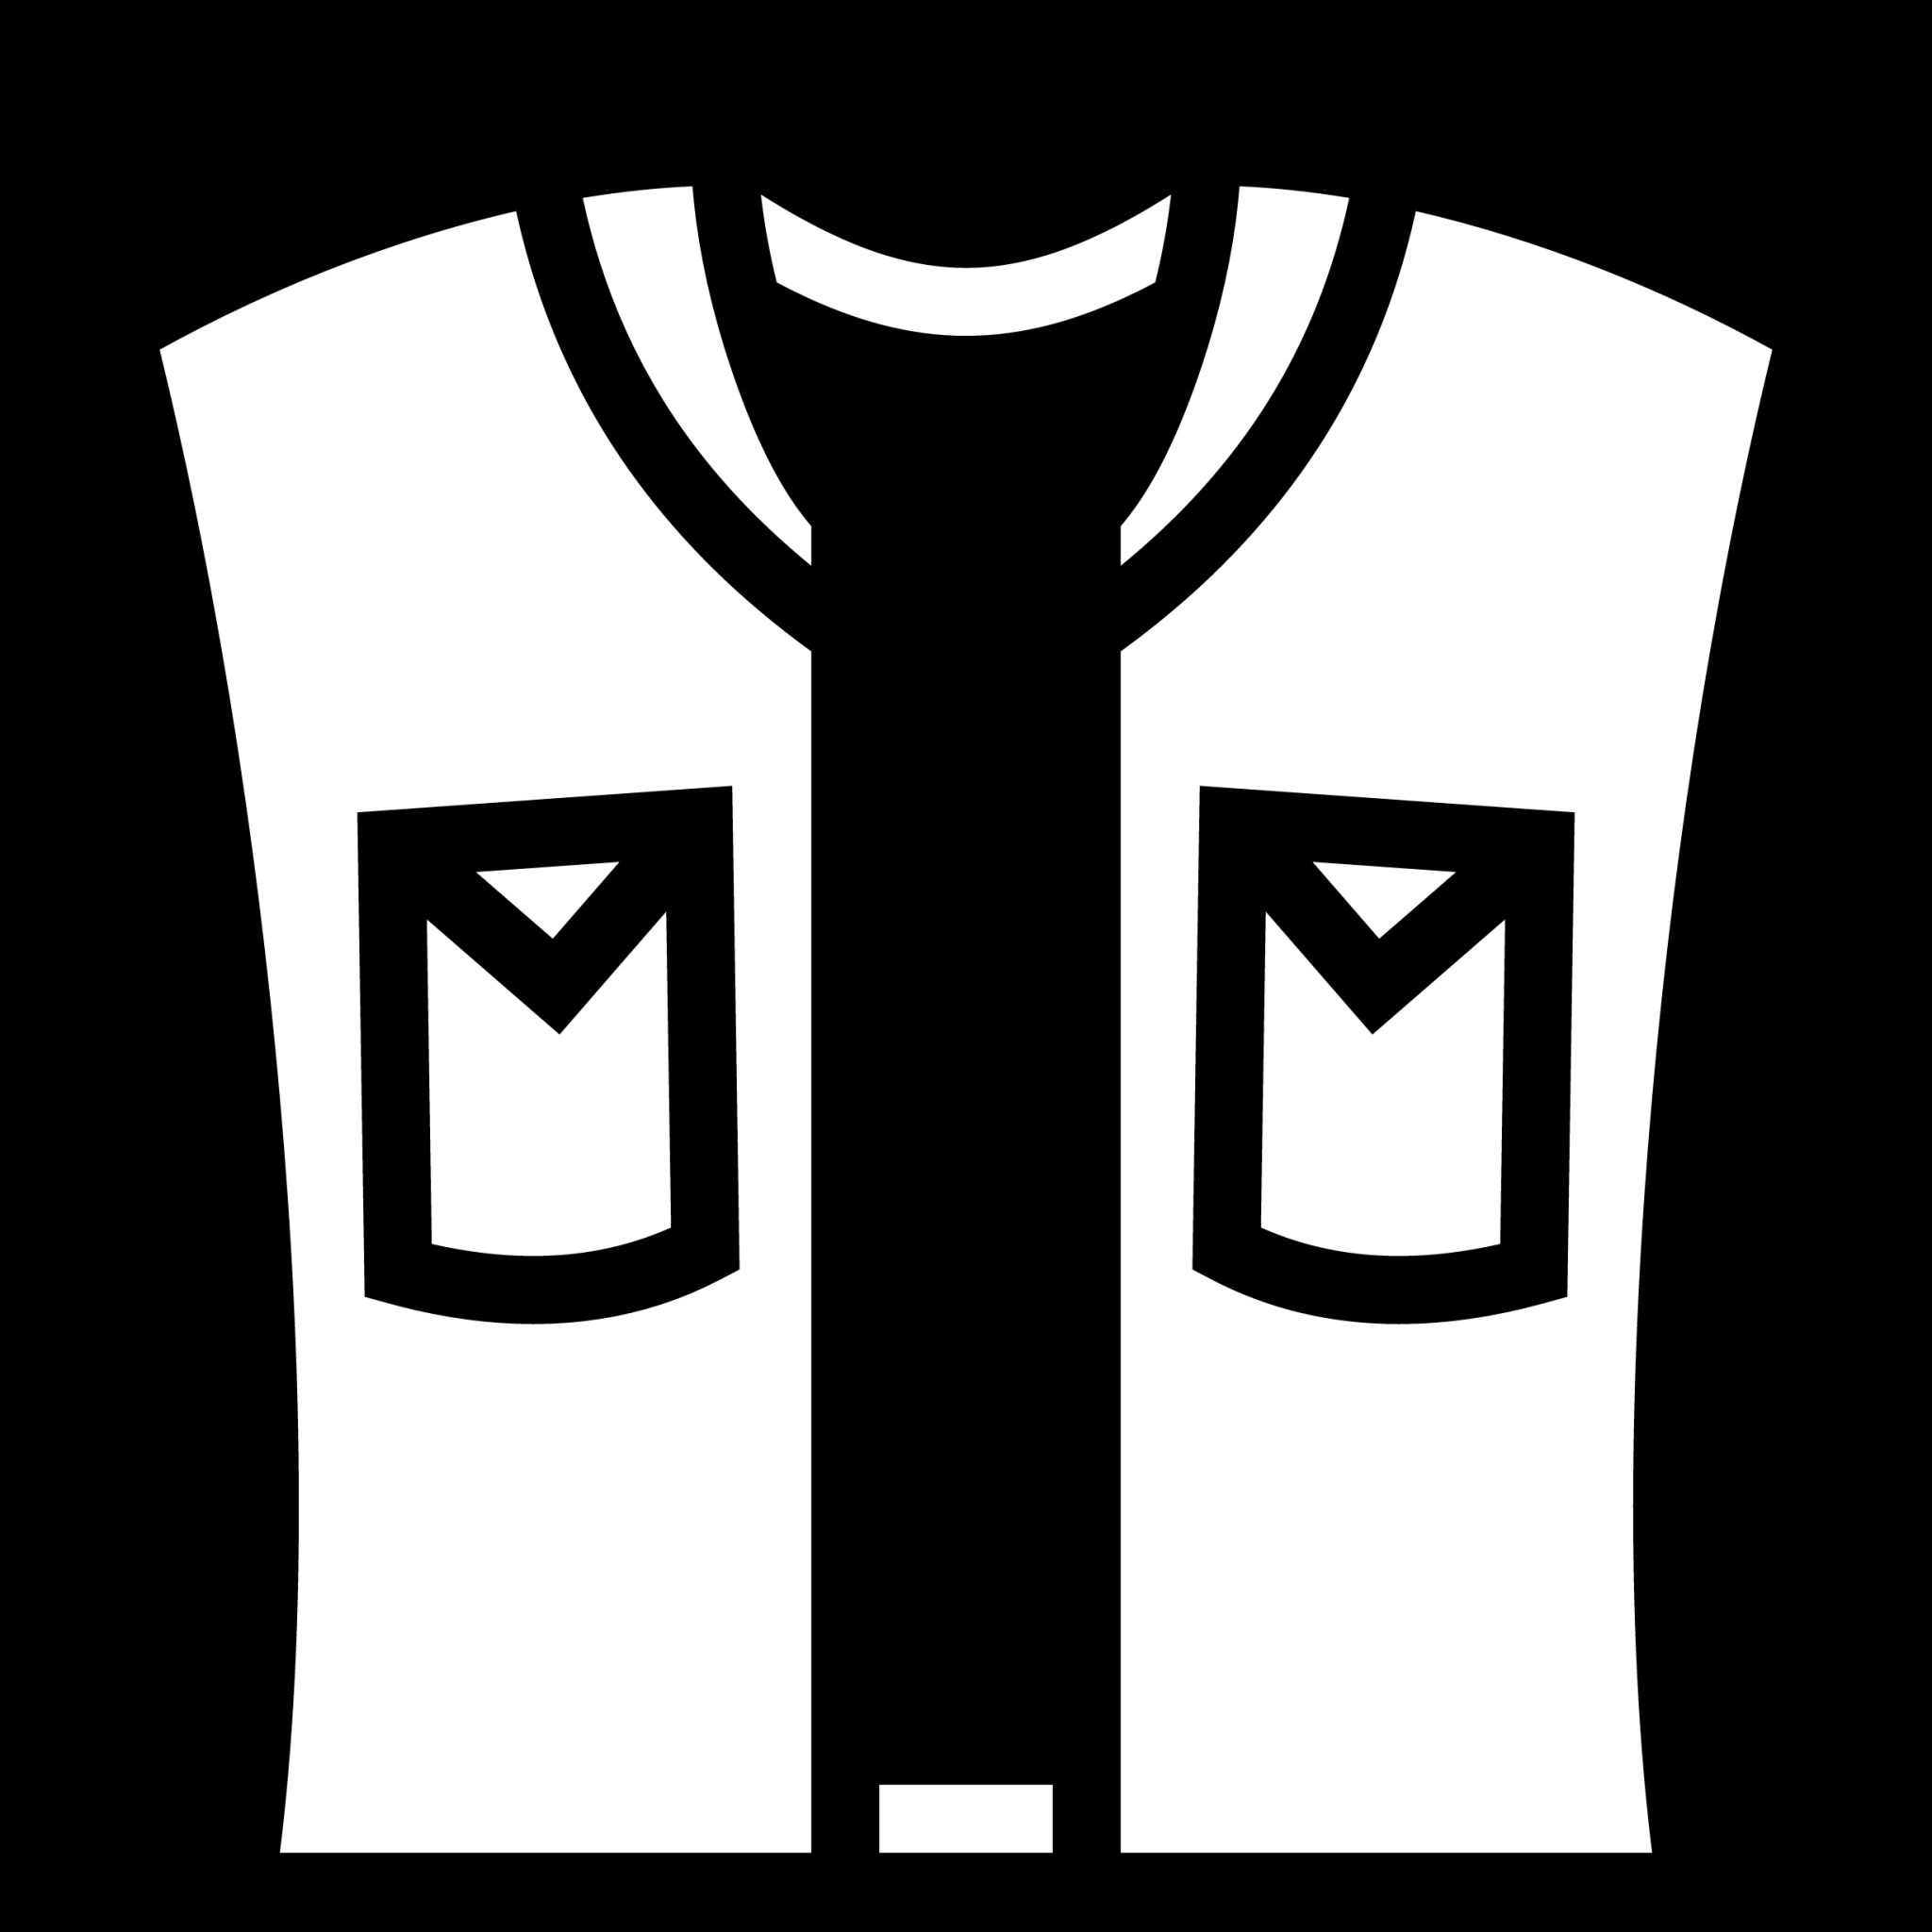 sleeveless jacket icon